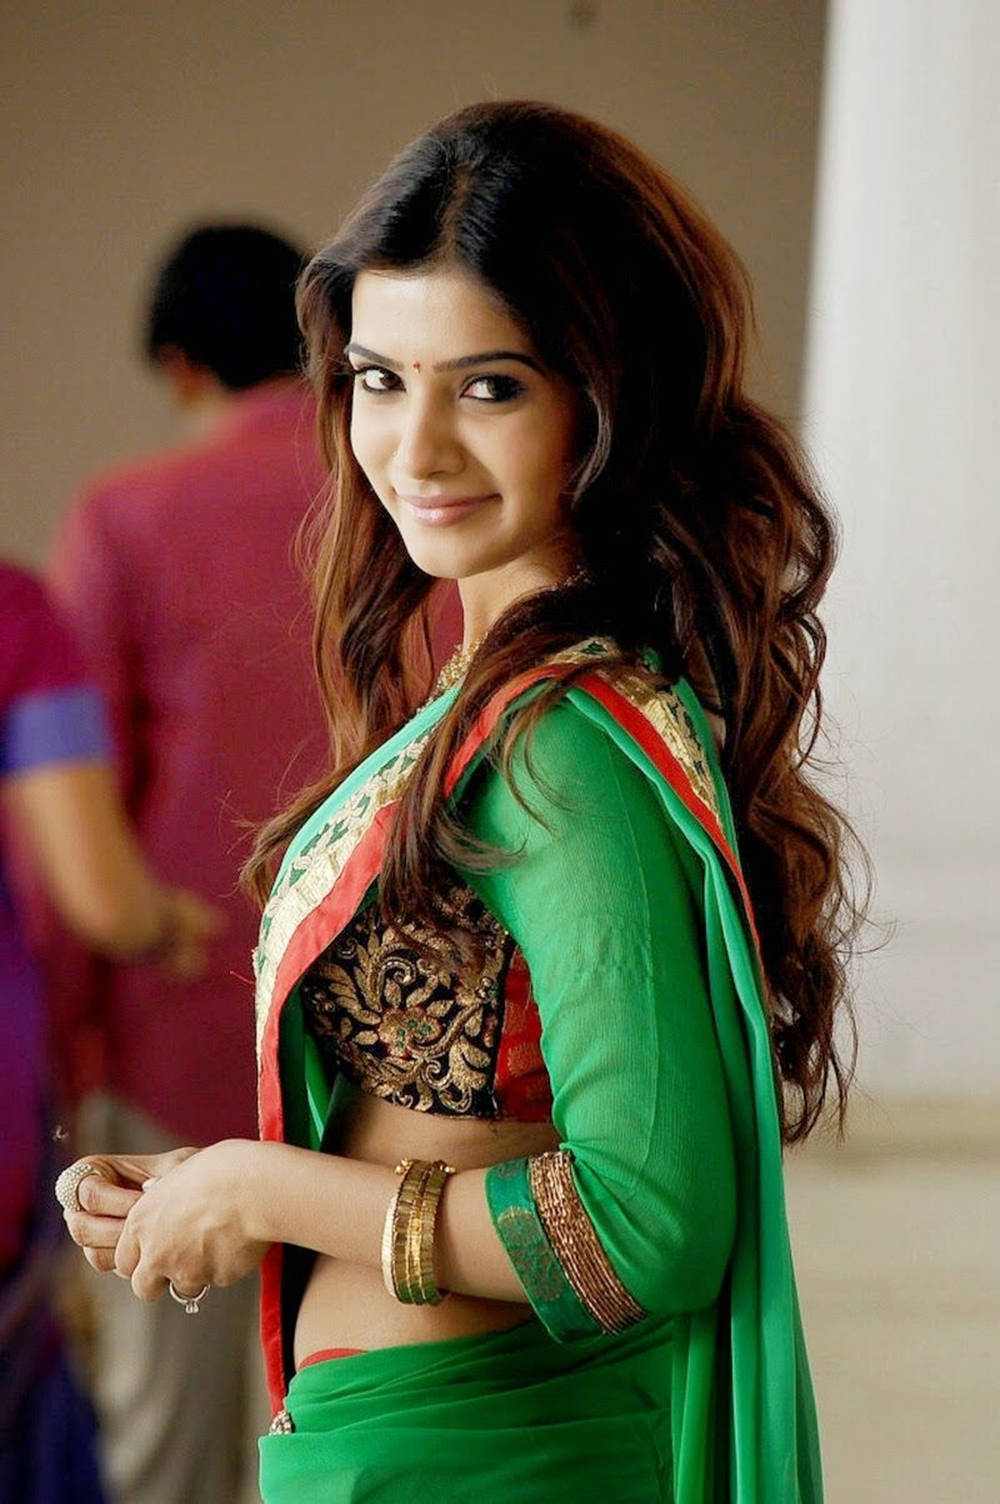 Smuk Samantha i grøn saree. Wallpaper